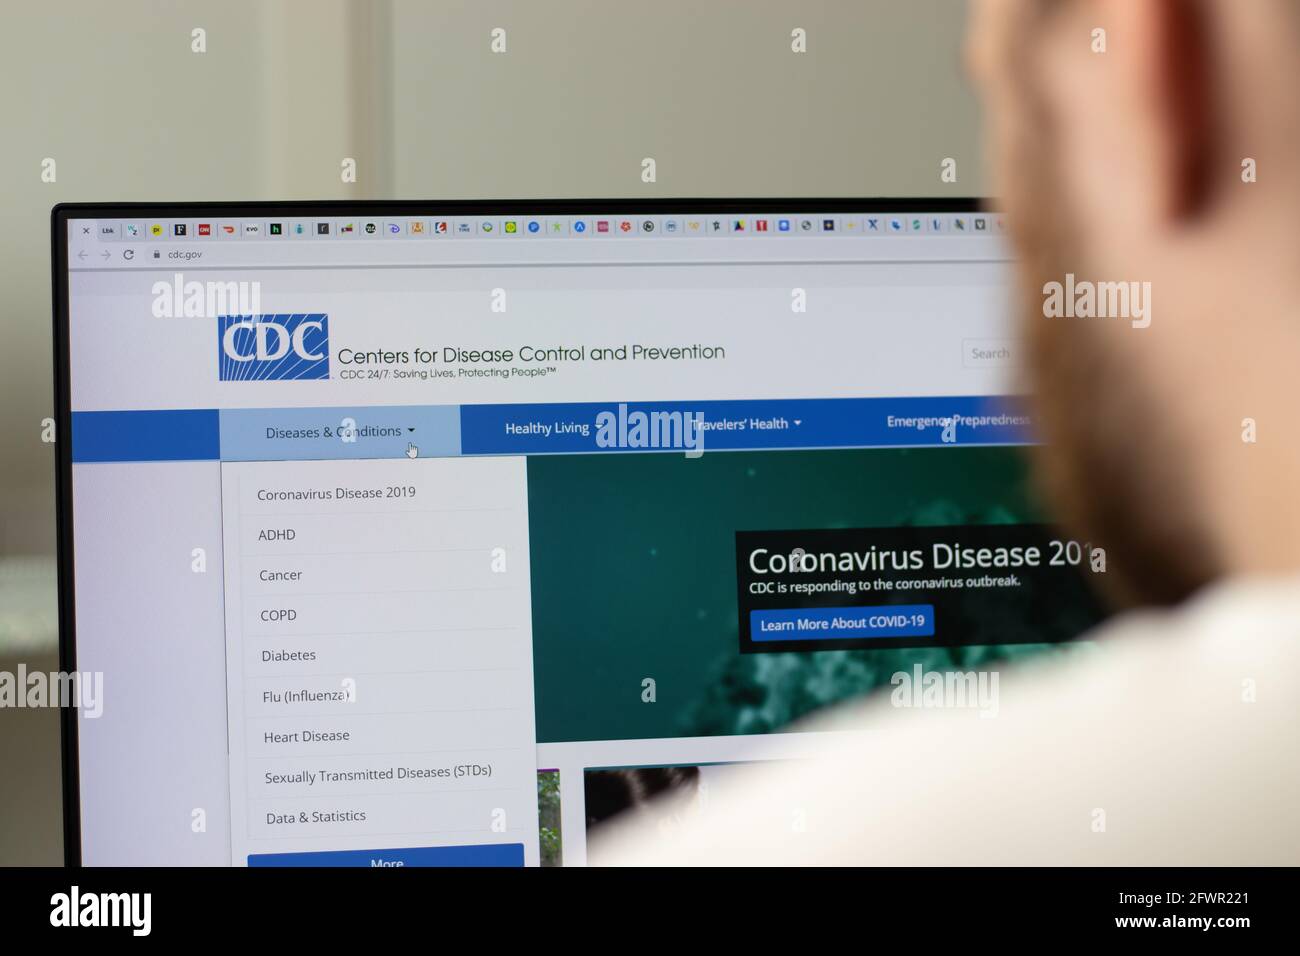 New York, USA - 1 maggio 2021: Sito web della CDC Centers for Disease Control and Prevention Company su schermo, editoriale illustrativo Foto Stock